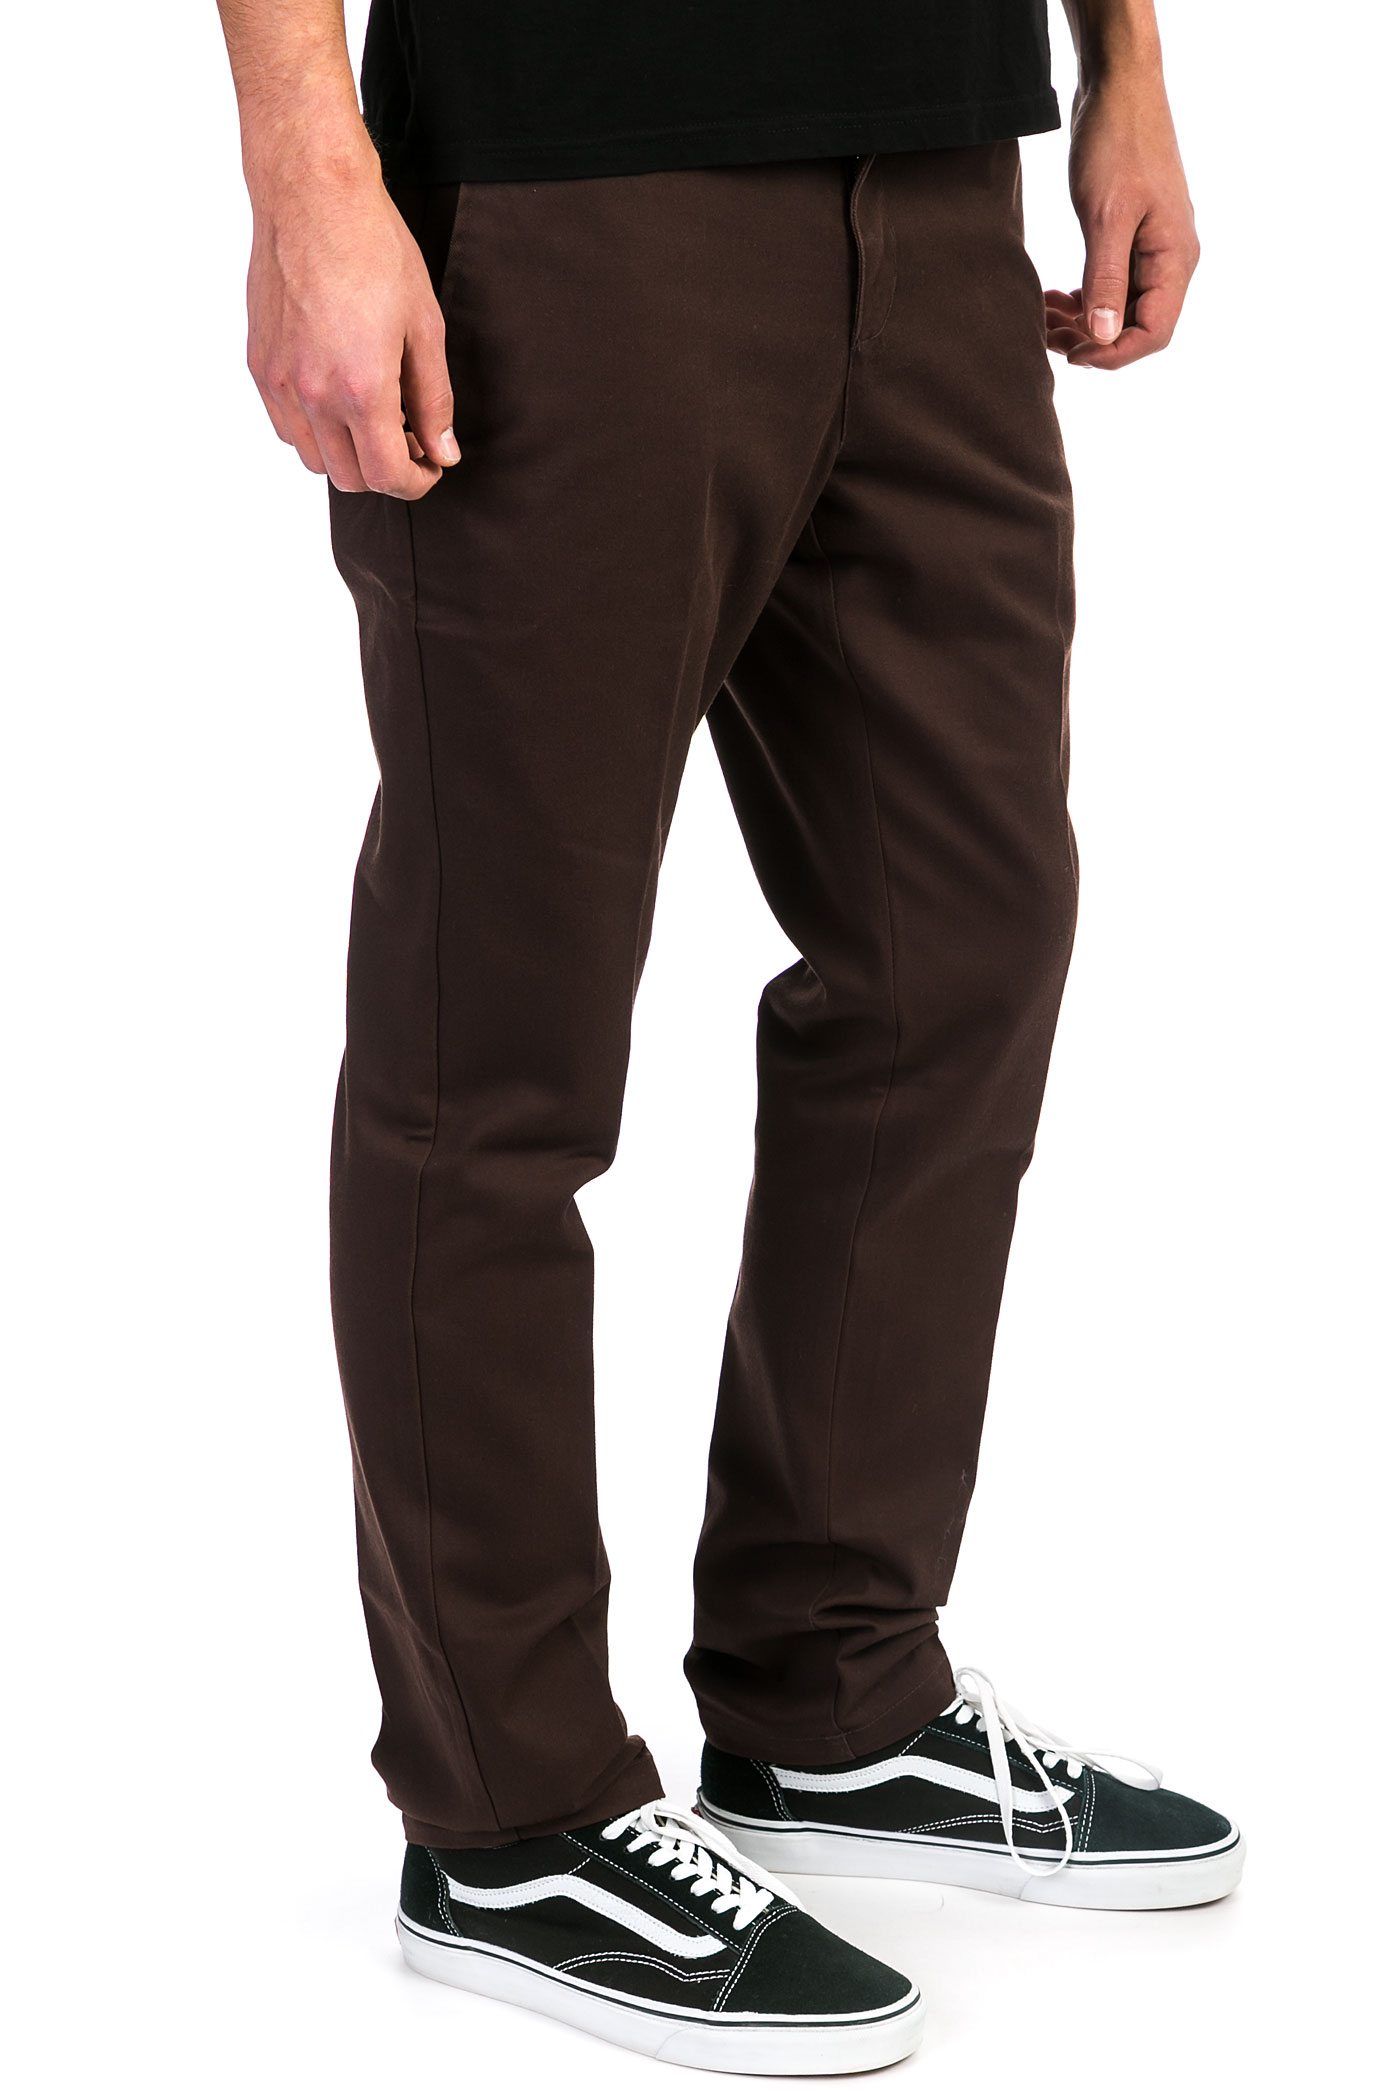 Dickies Slim Fit Work Pants (chocolate brown) buy at skatedeluxe